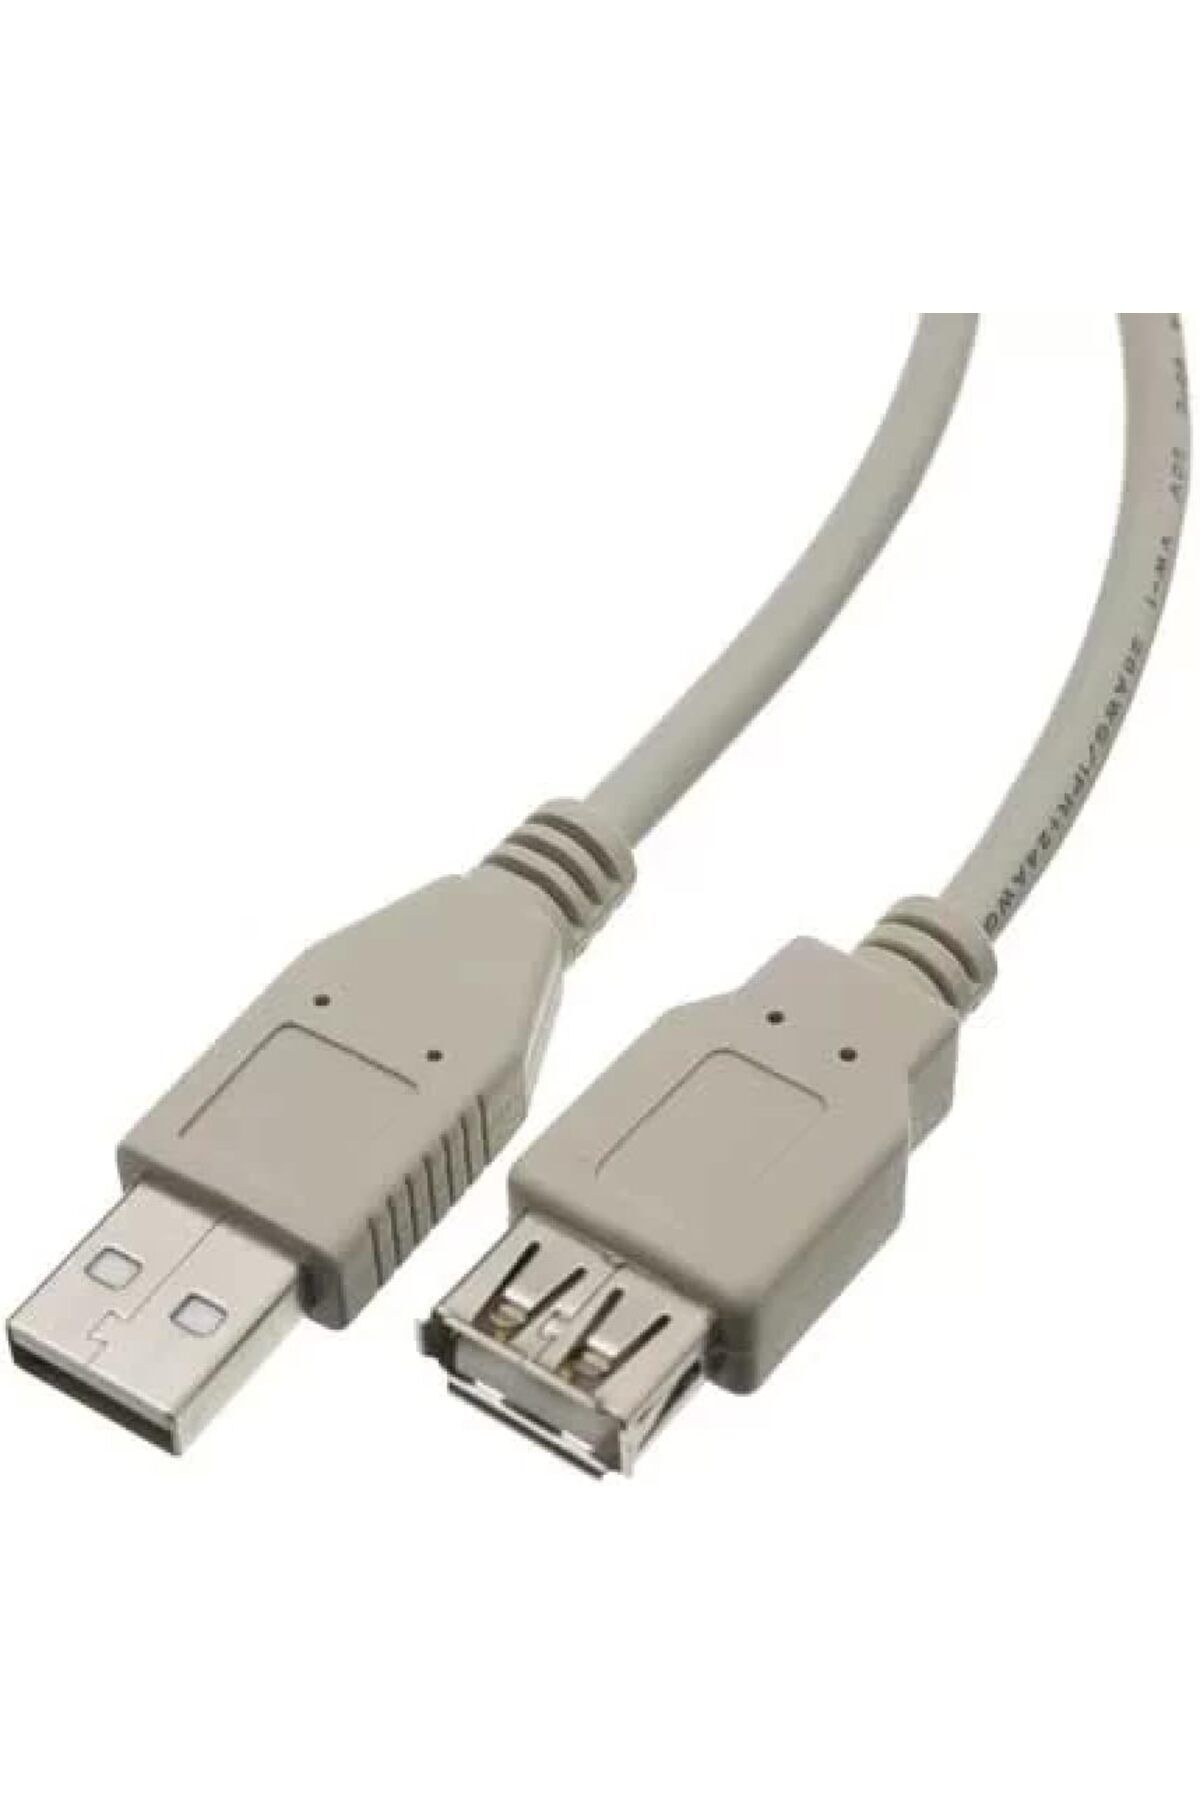 Store Dişi - Erkek USB Kablosu (1.5 metre)